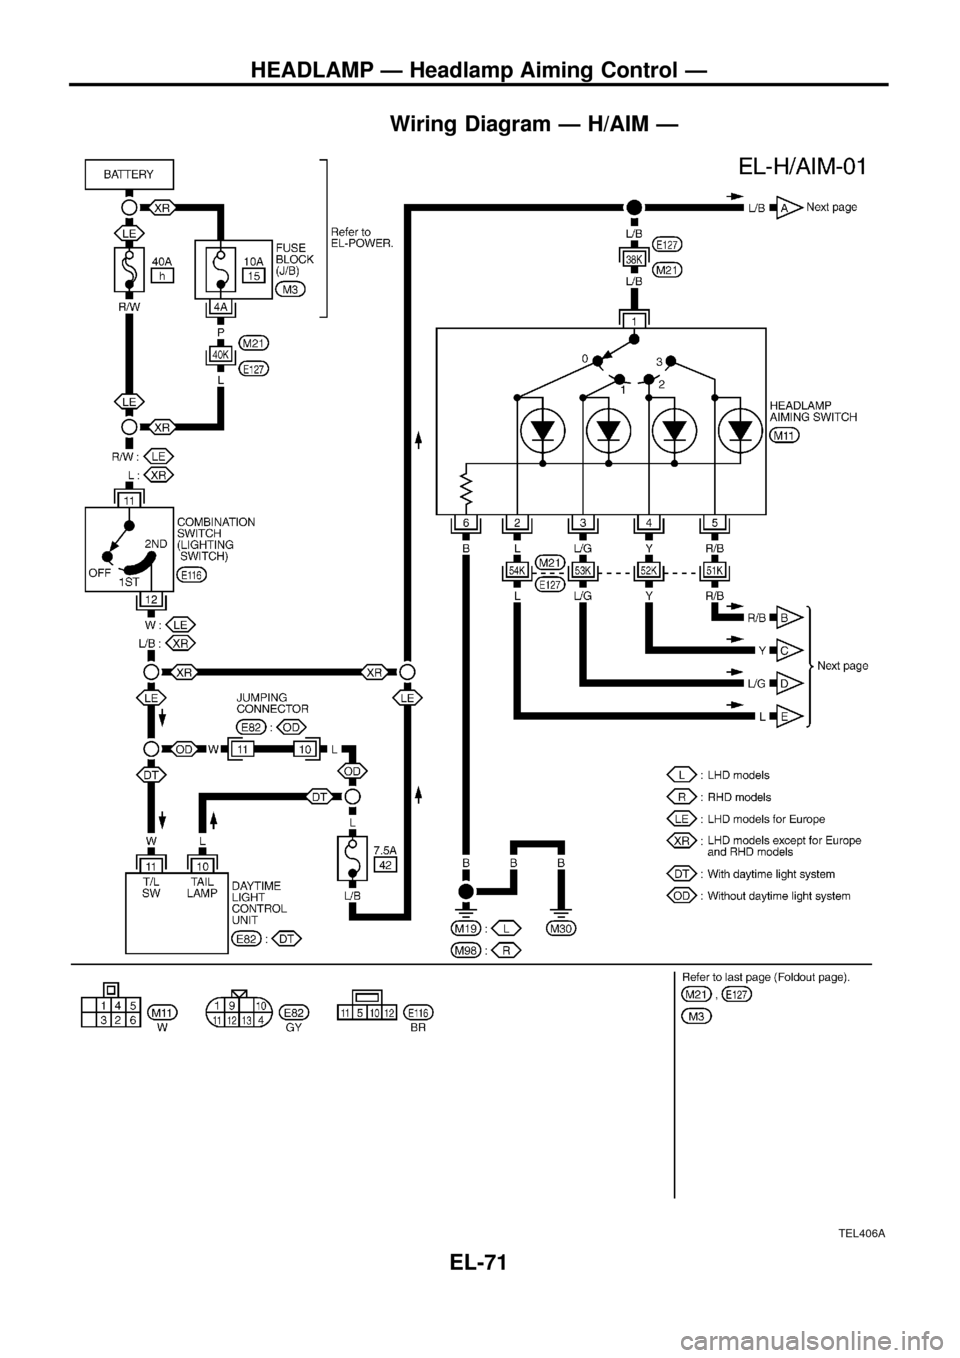 NISSAN PATROL 1998 Y61 / 5.G Electrical System Manual PDF Wiring Diagram Ð H/AIM Ð
TEL406A
HEADLAMP Ð Headlamp Aiming Control Ð
EL-71 